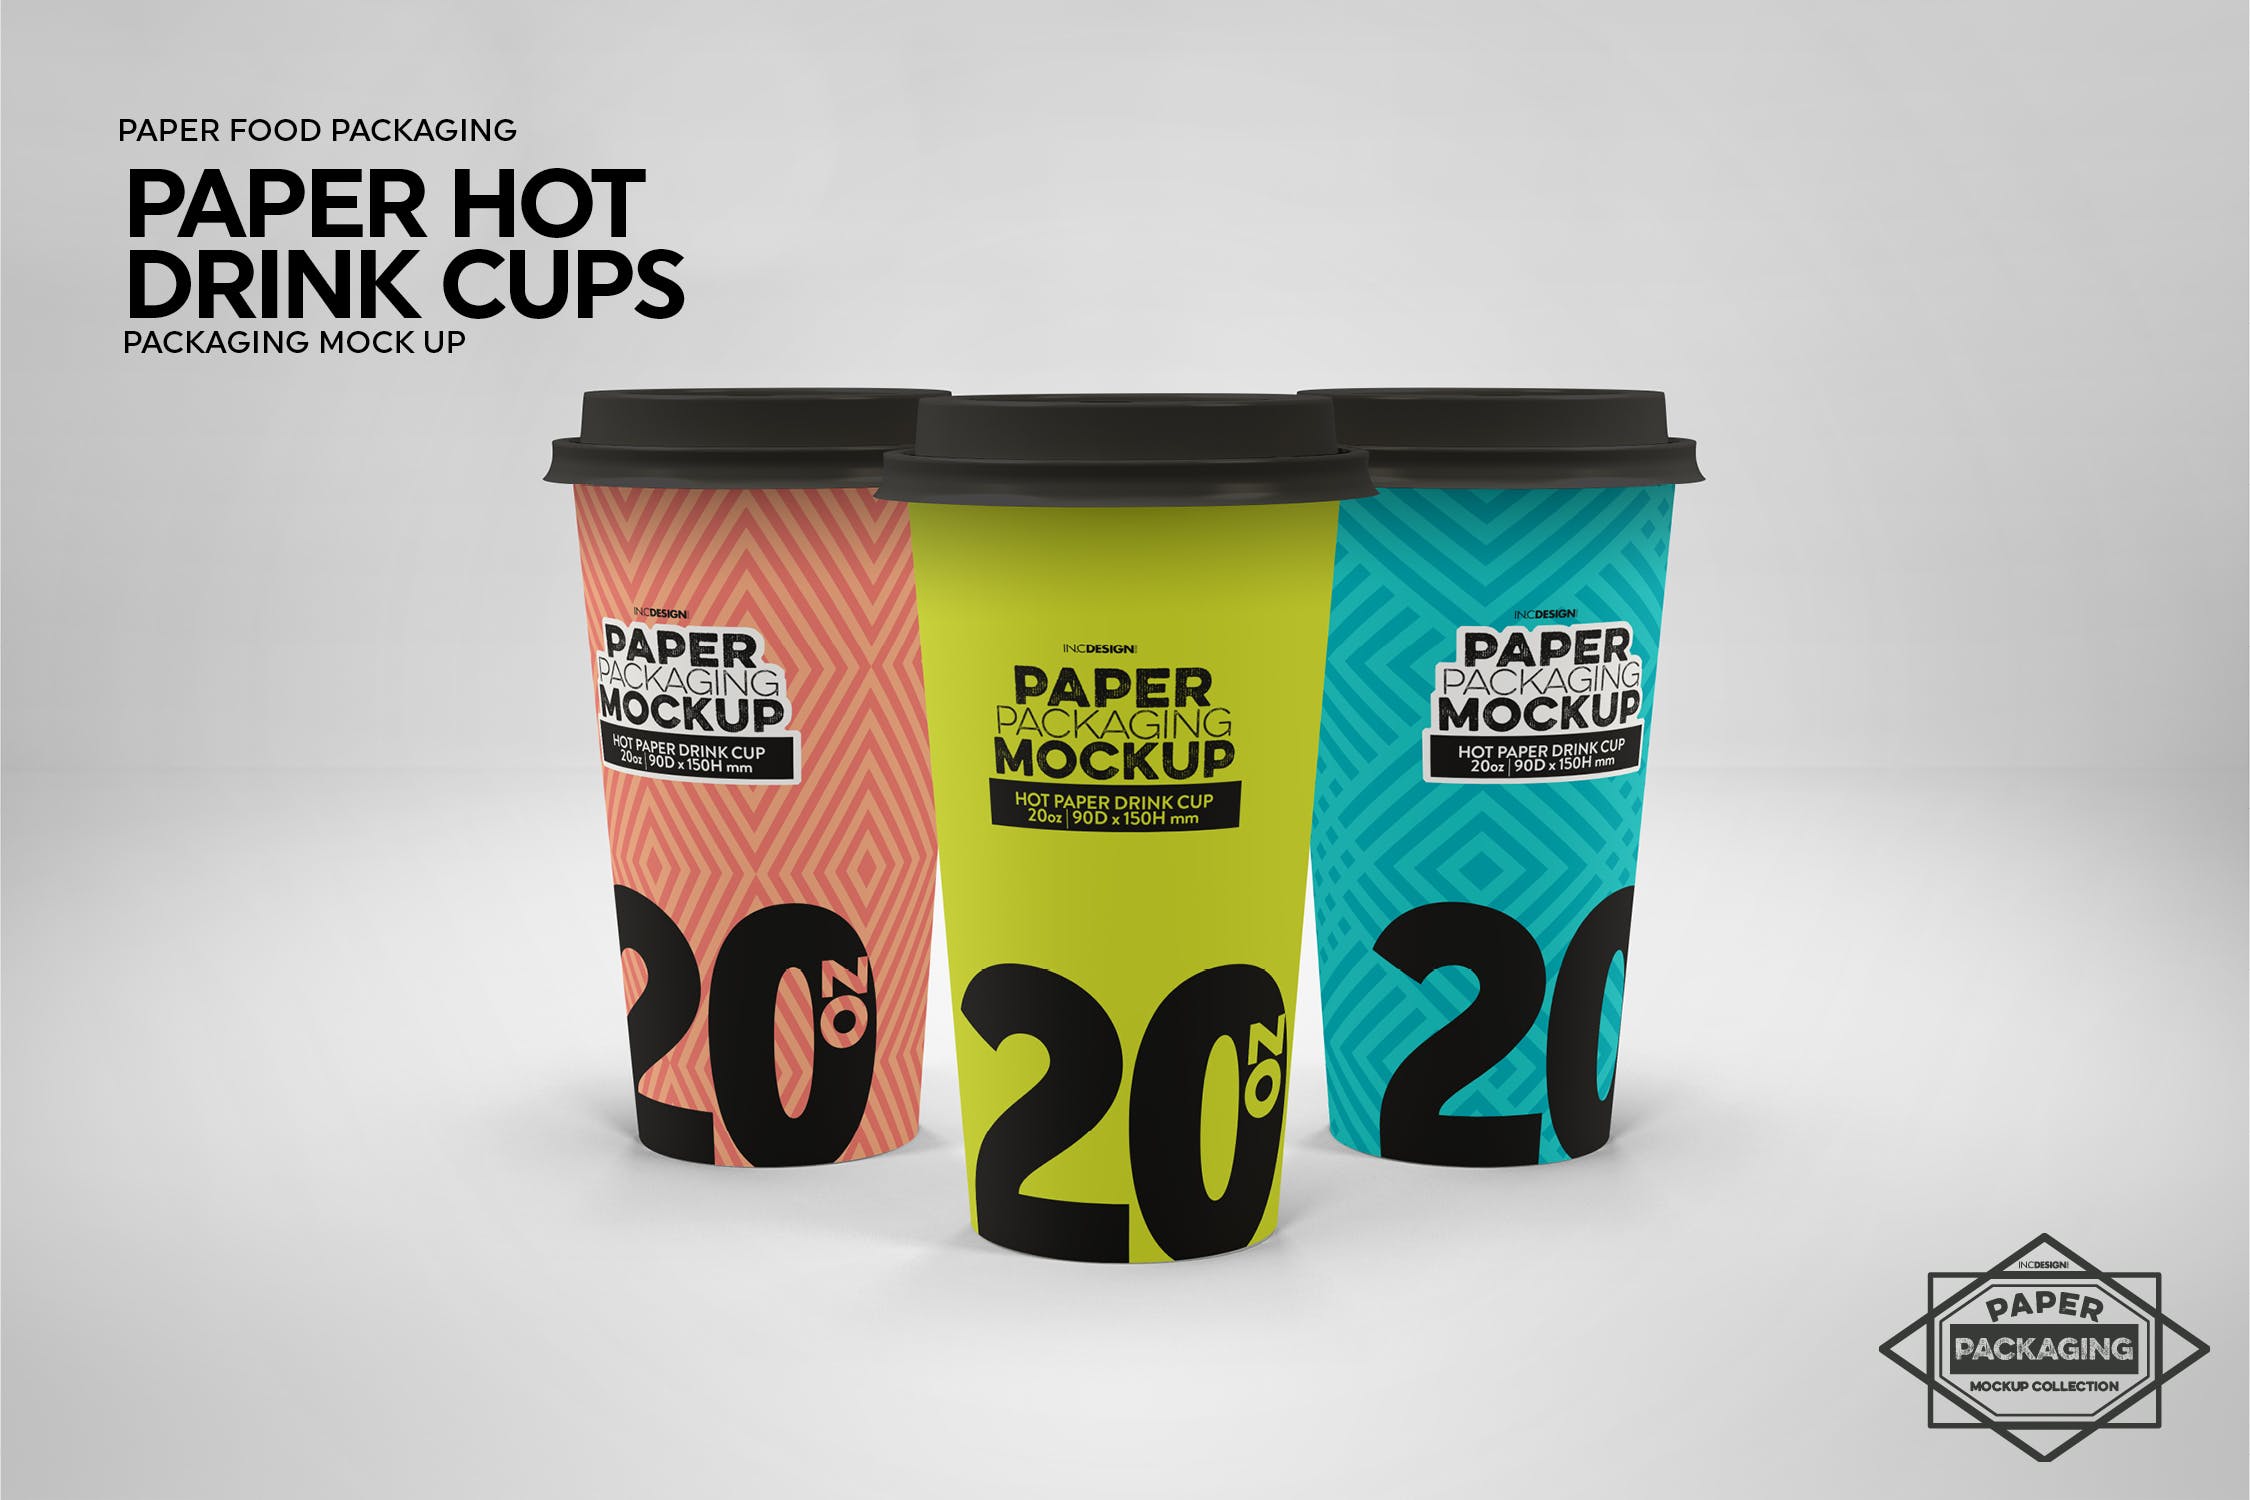 热饮一次性纸杯外观设计素材库精选 Paper Hot Drink Cups Packaging Mockup插图(6)